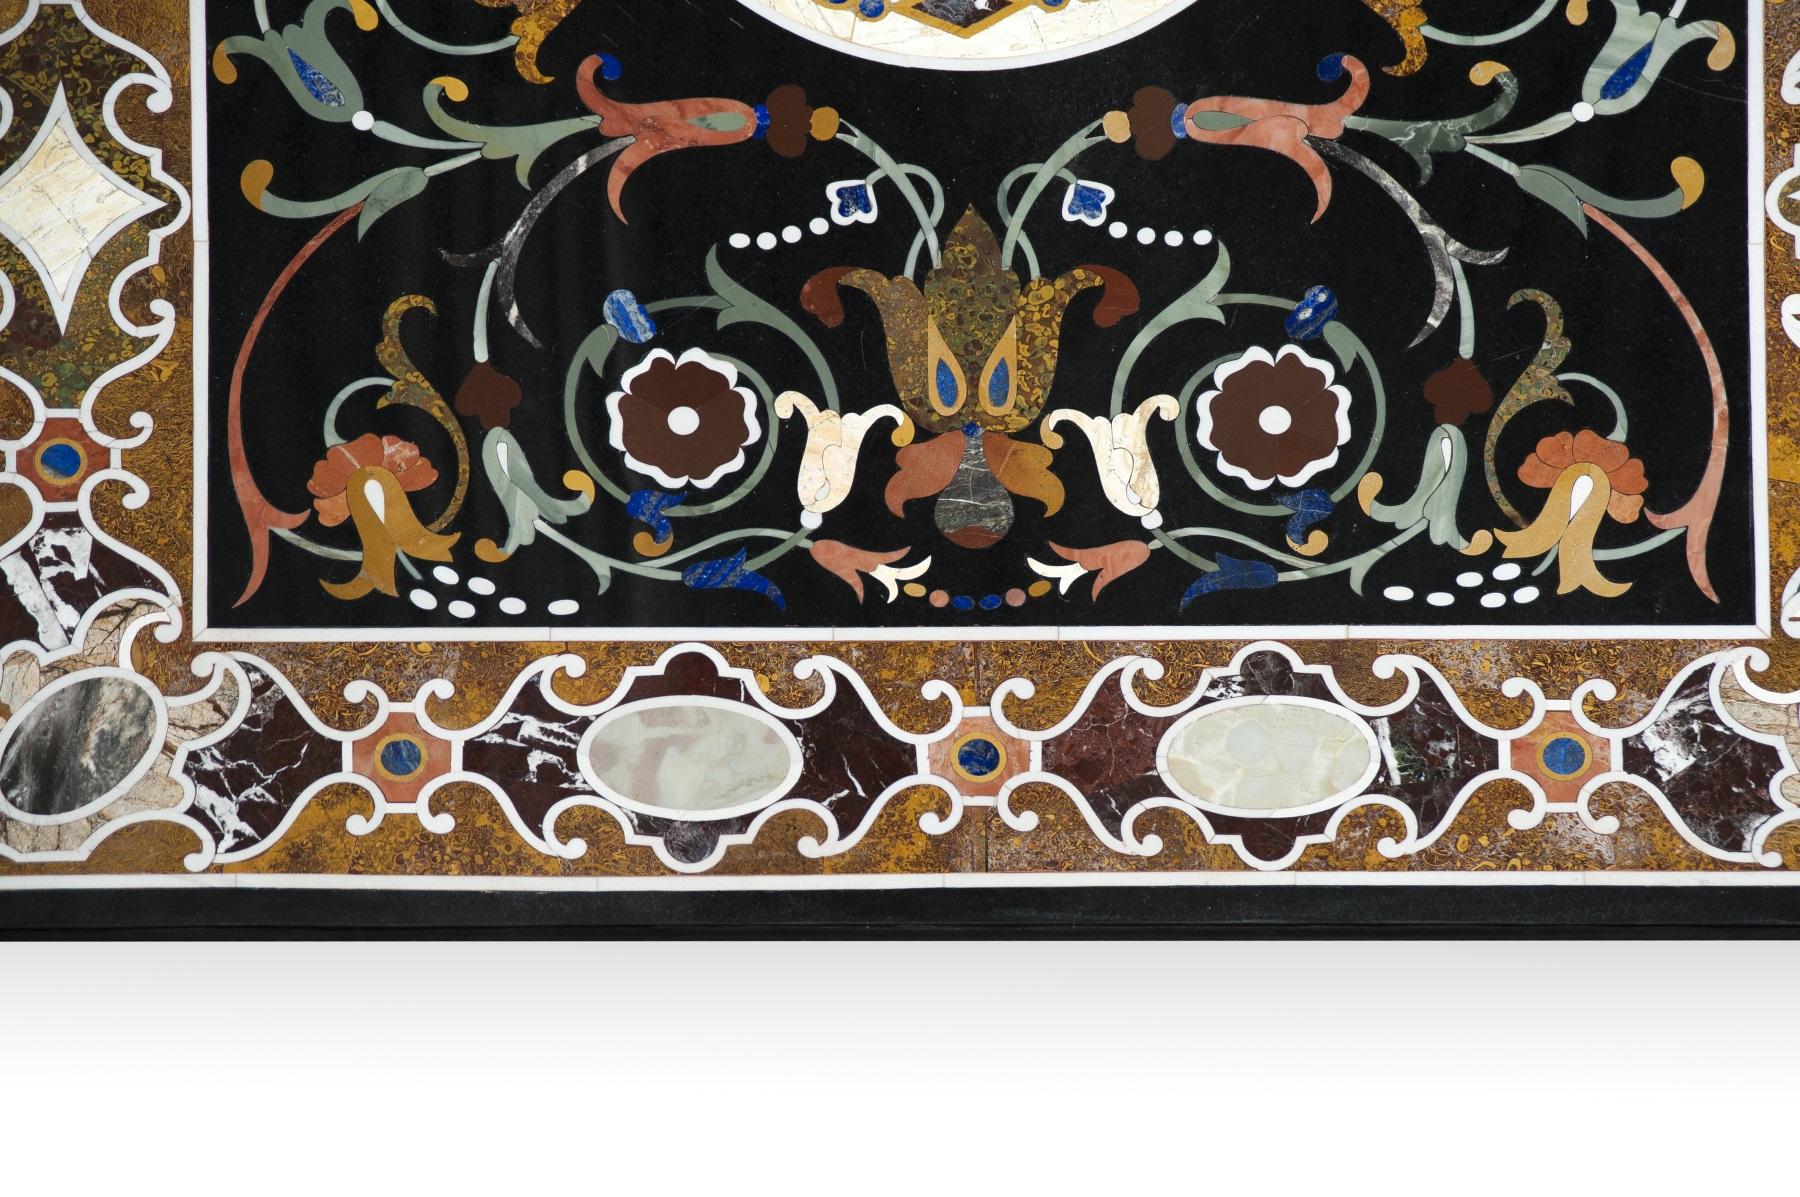 Rechteckige Tischplatte mit Murmeln und harten Steinen. Inspiriert von italienischen Vorbildern aus dem XVI-XVII Jahrhundert. Die Maserung eines bestimmten Steins wurde hervorgehoben, indem er in der Mitte platziert und von einer Kette mit runden